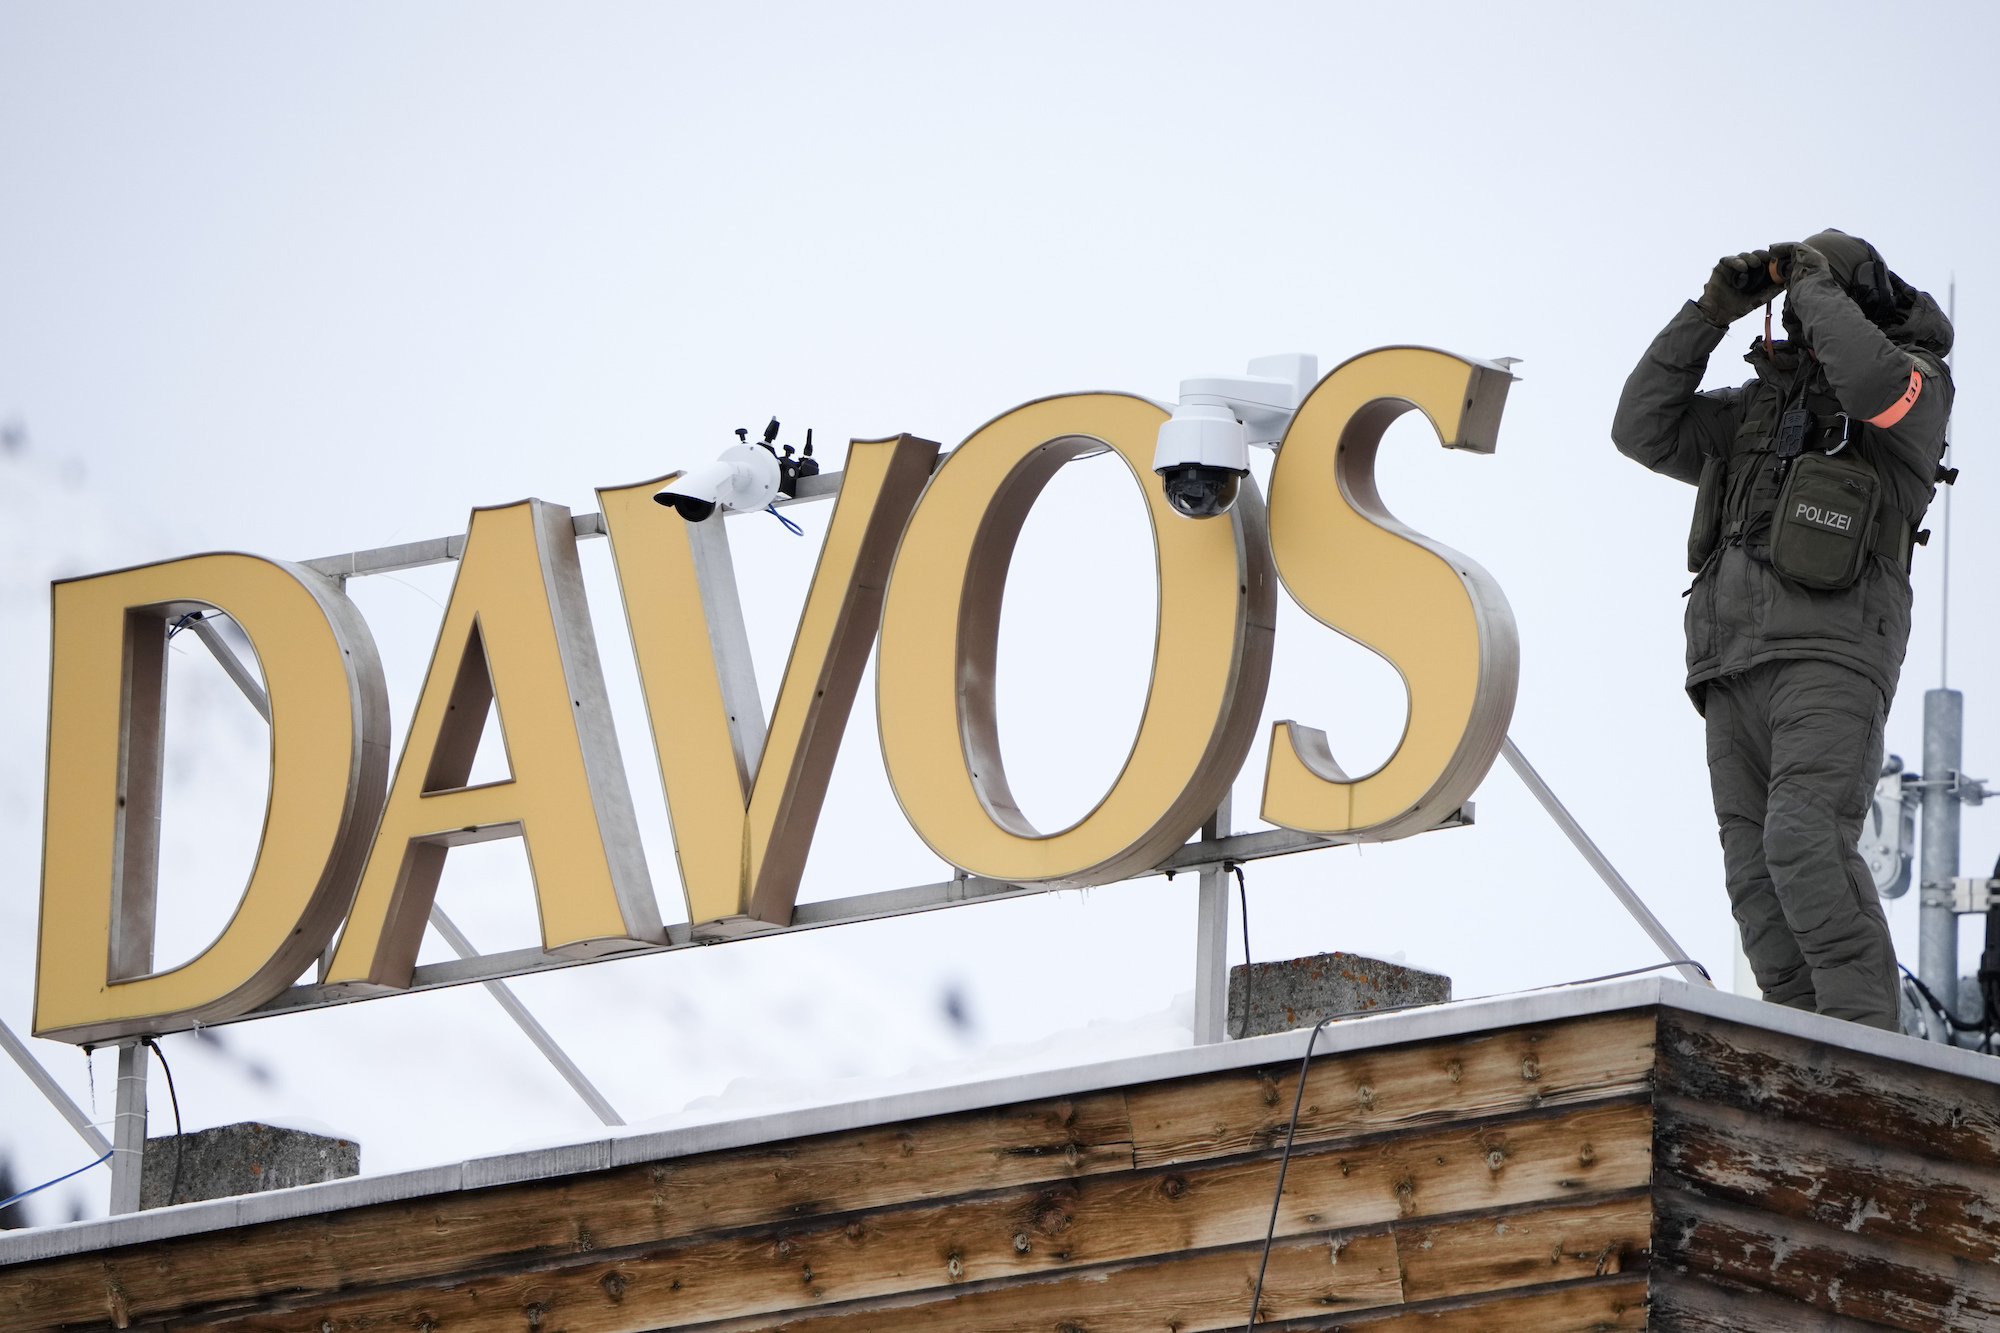 Một cảnh sát đứng trên nóc một khách sạn và giám sát khu vực ở Davos, Thụy Sĩ, hôm 16/01/2023. (Ảnh: AP/Markus Schreiber)